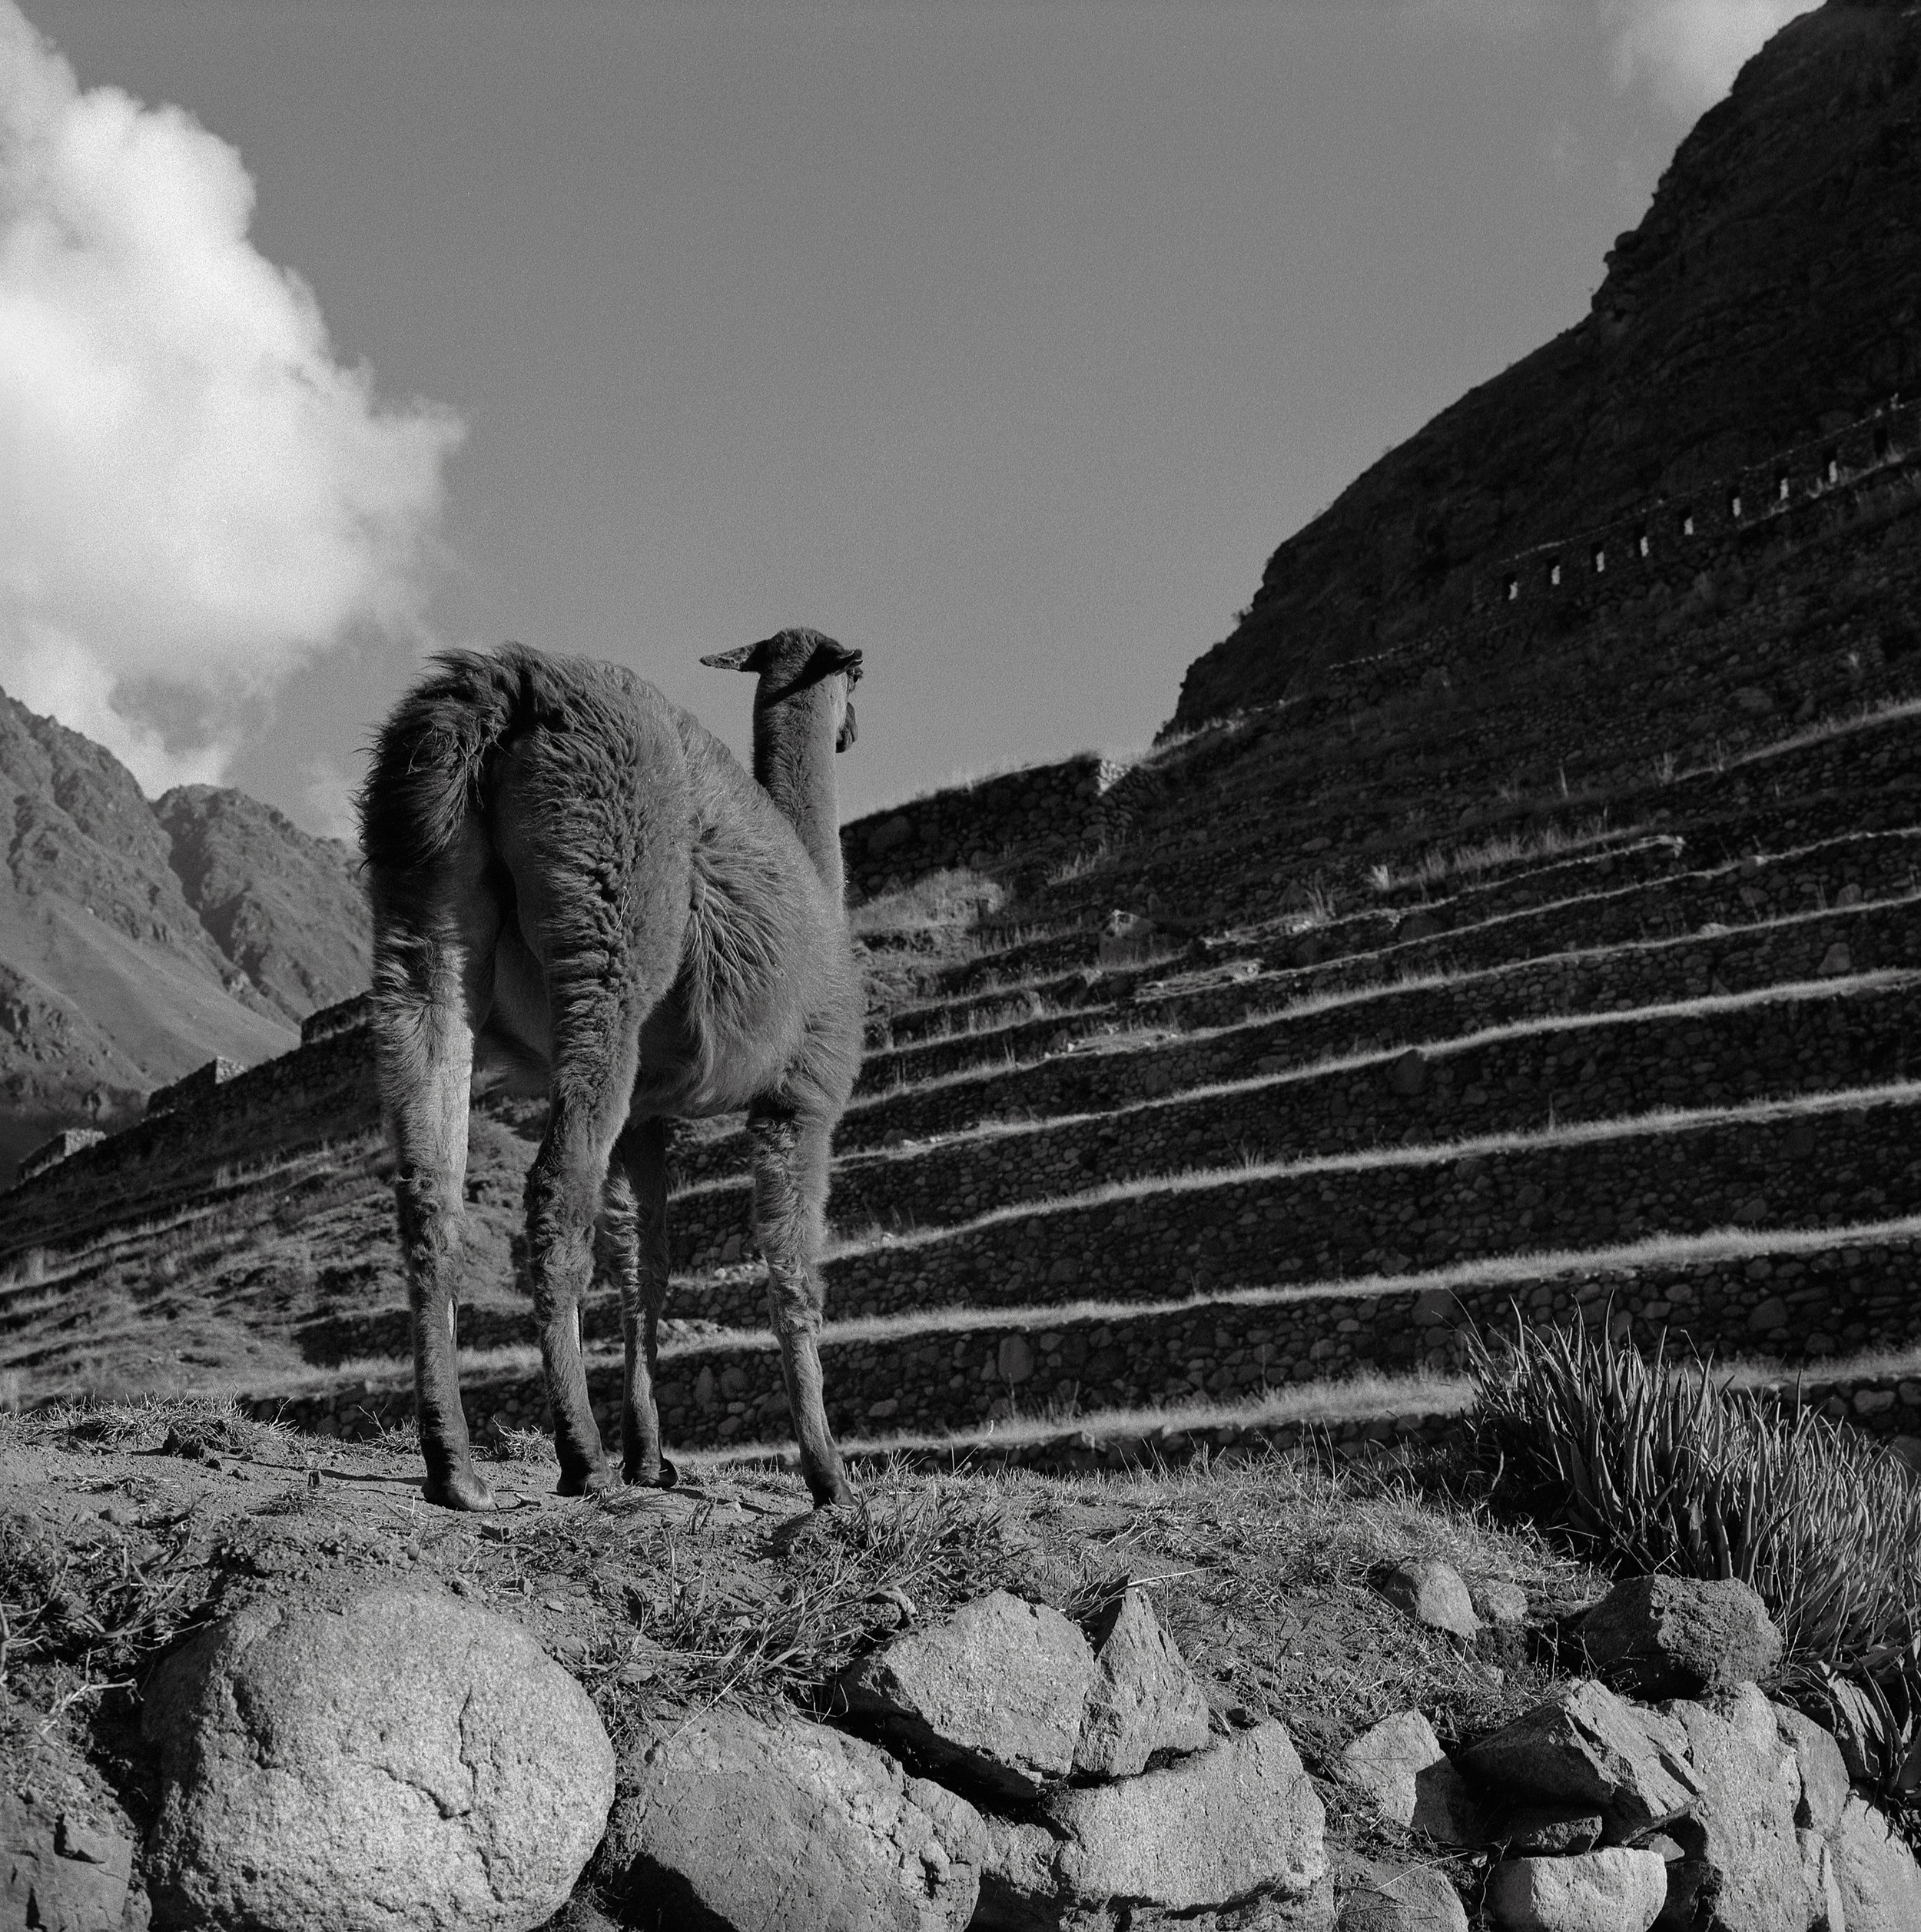 Llama, Patallacta, Peru